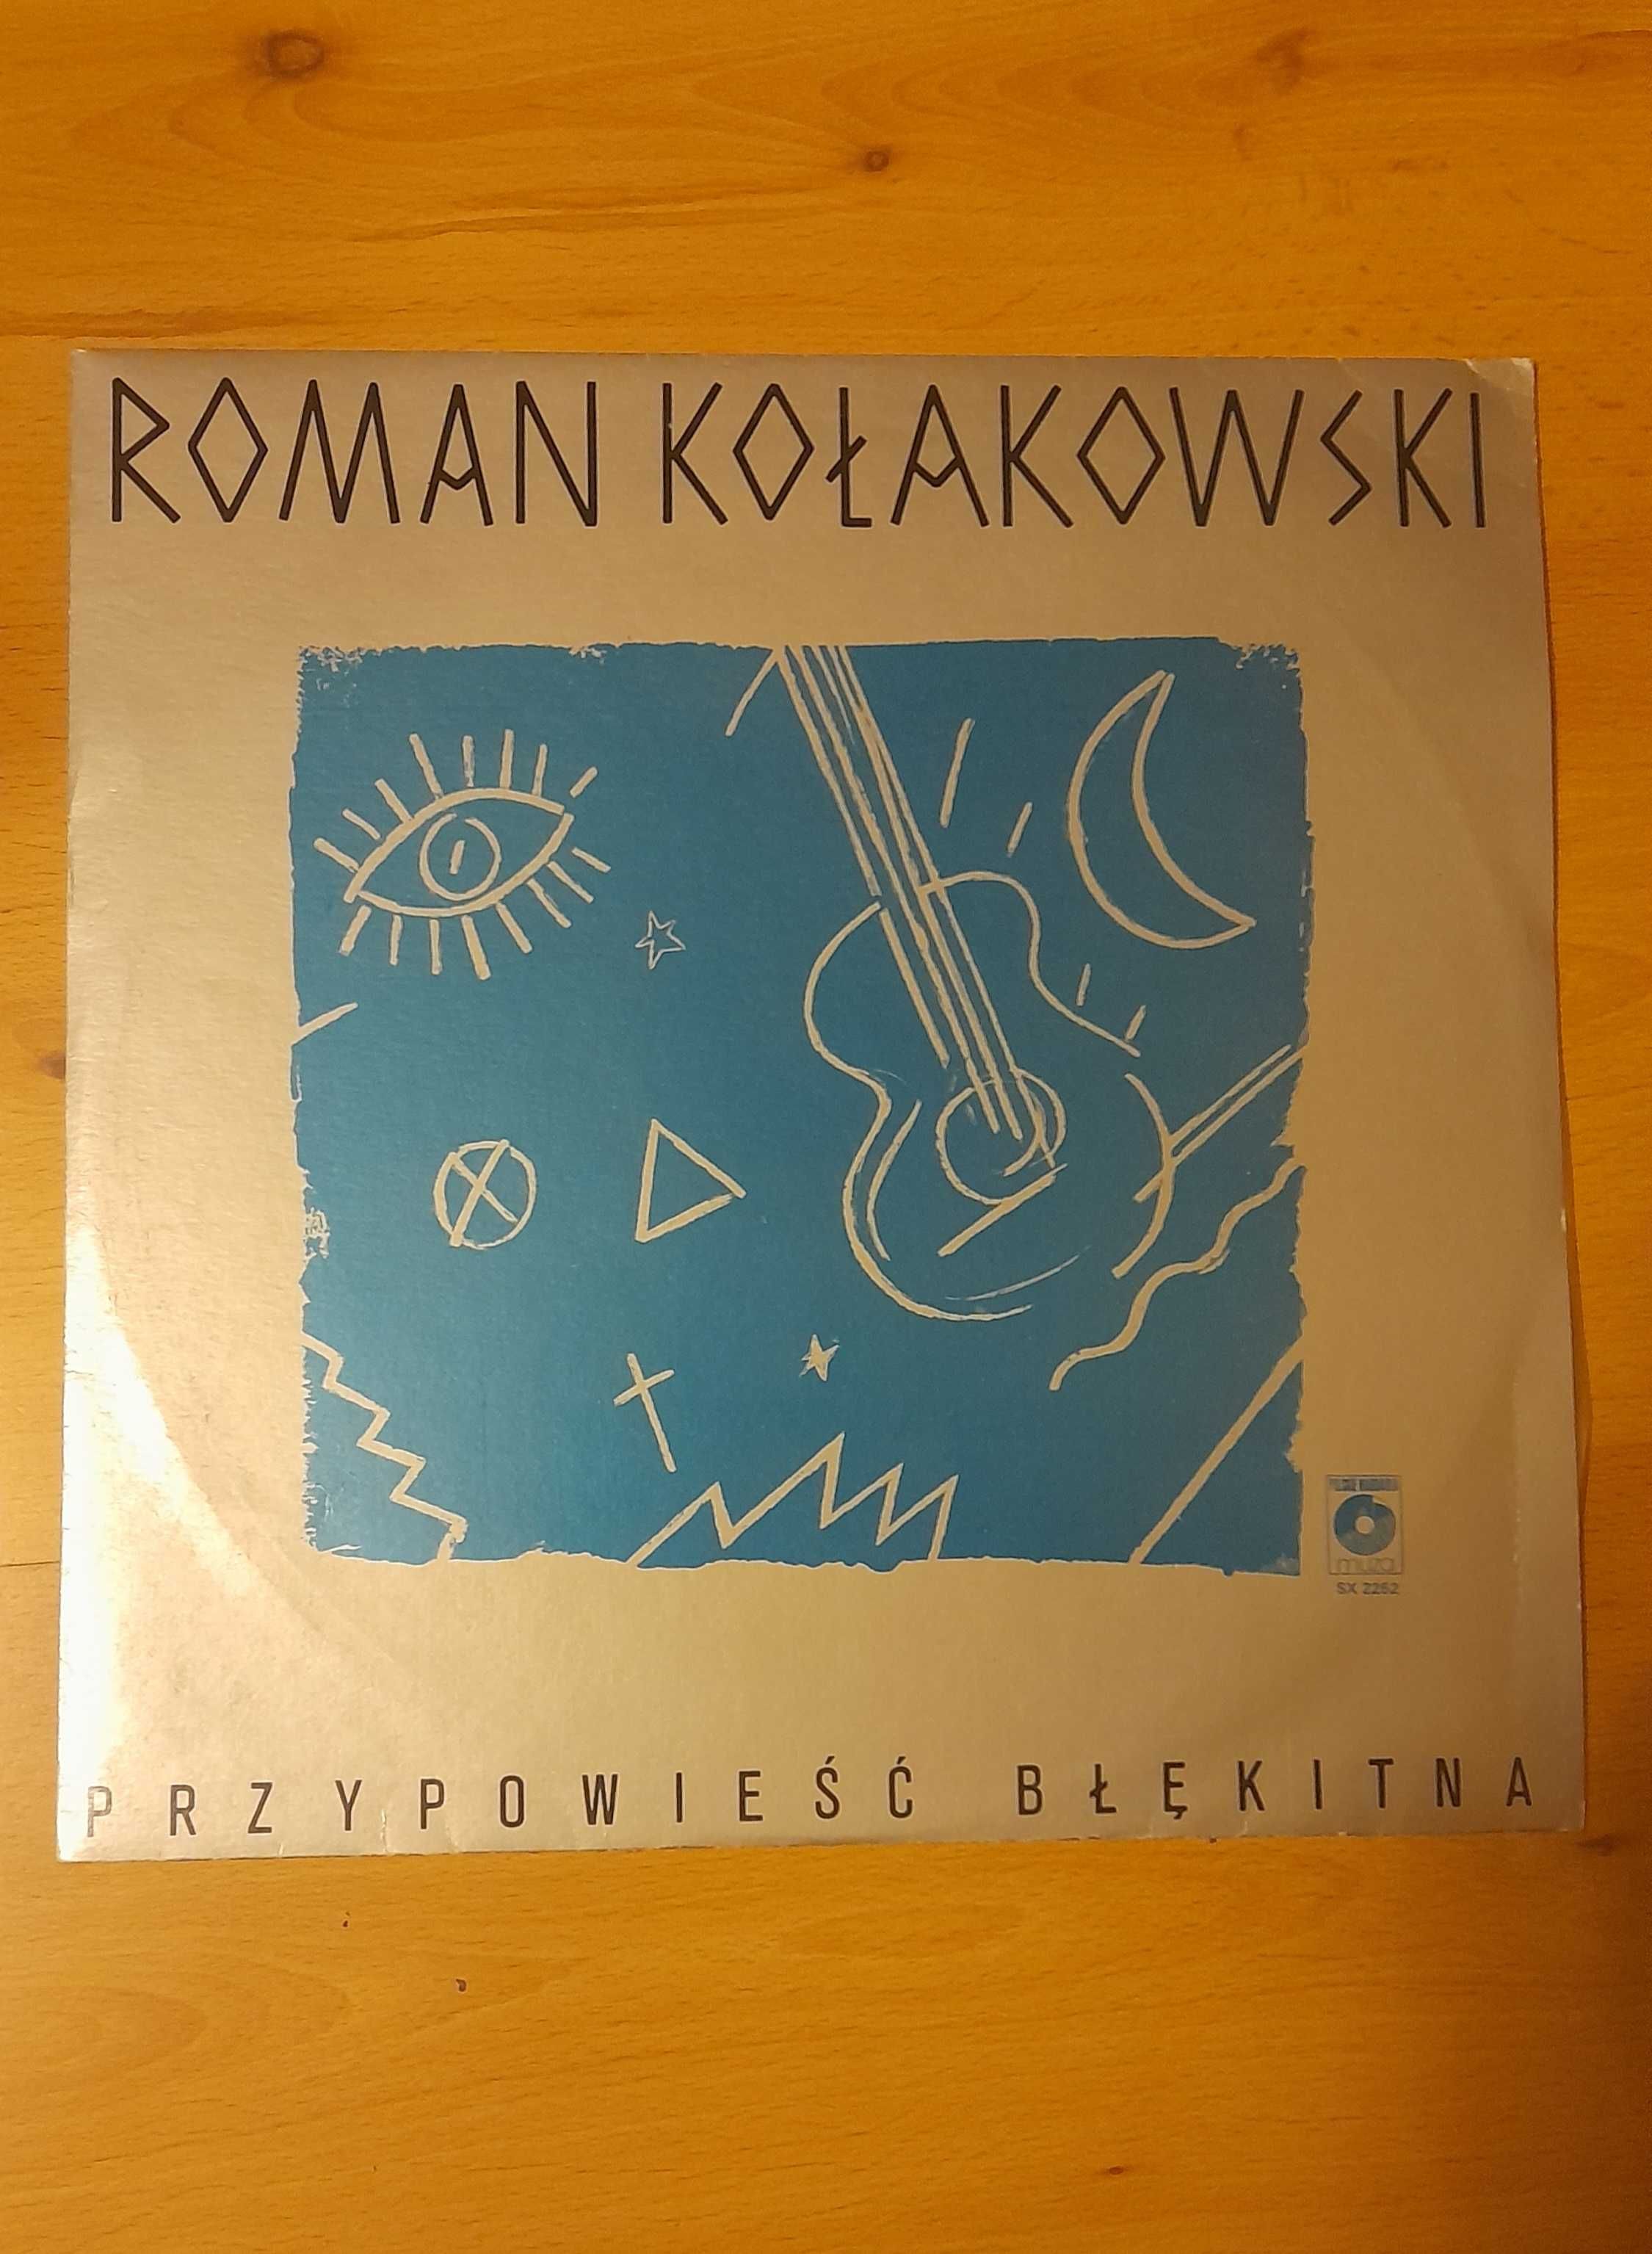 LP Roman Kołakowski - PRZYPOWIEŚĆ BŁĘKITNA [1985]